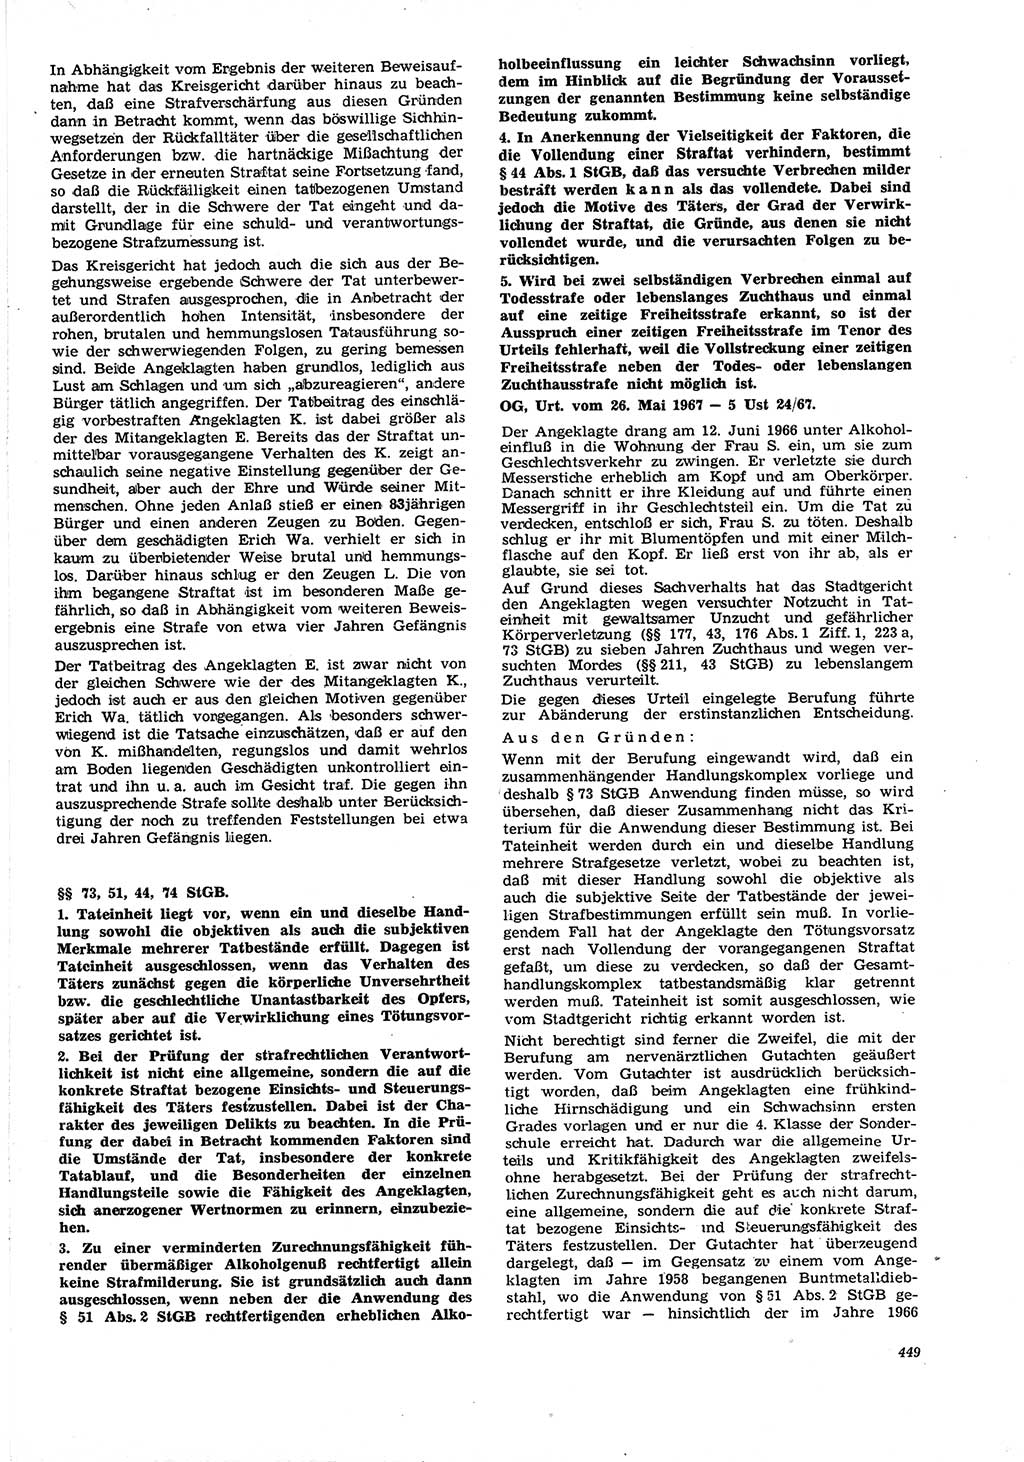 Neue Justiz (NJ), Zeitschrift für Recht und Rechtswissenschaft [Deutsche Demokratische Republik (DDR)], 21. Jahrgang 1967, Seite 449 (NJ DDR 1967, S. 449)